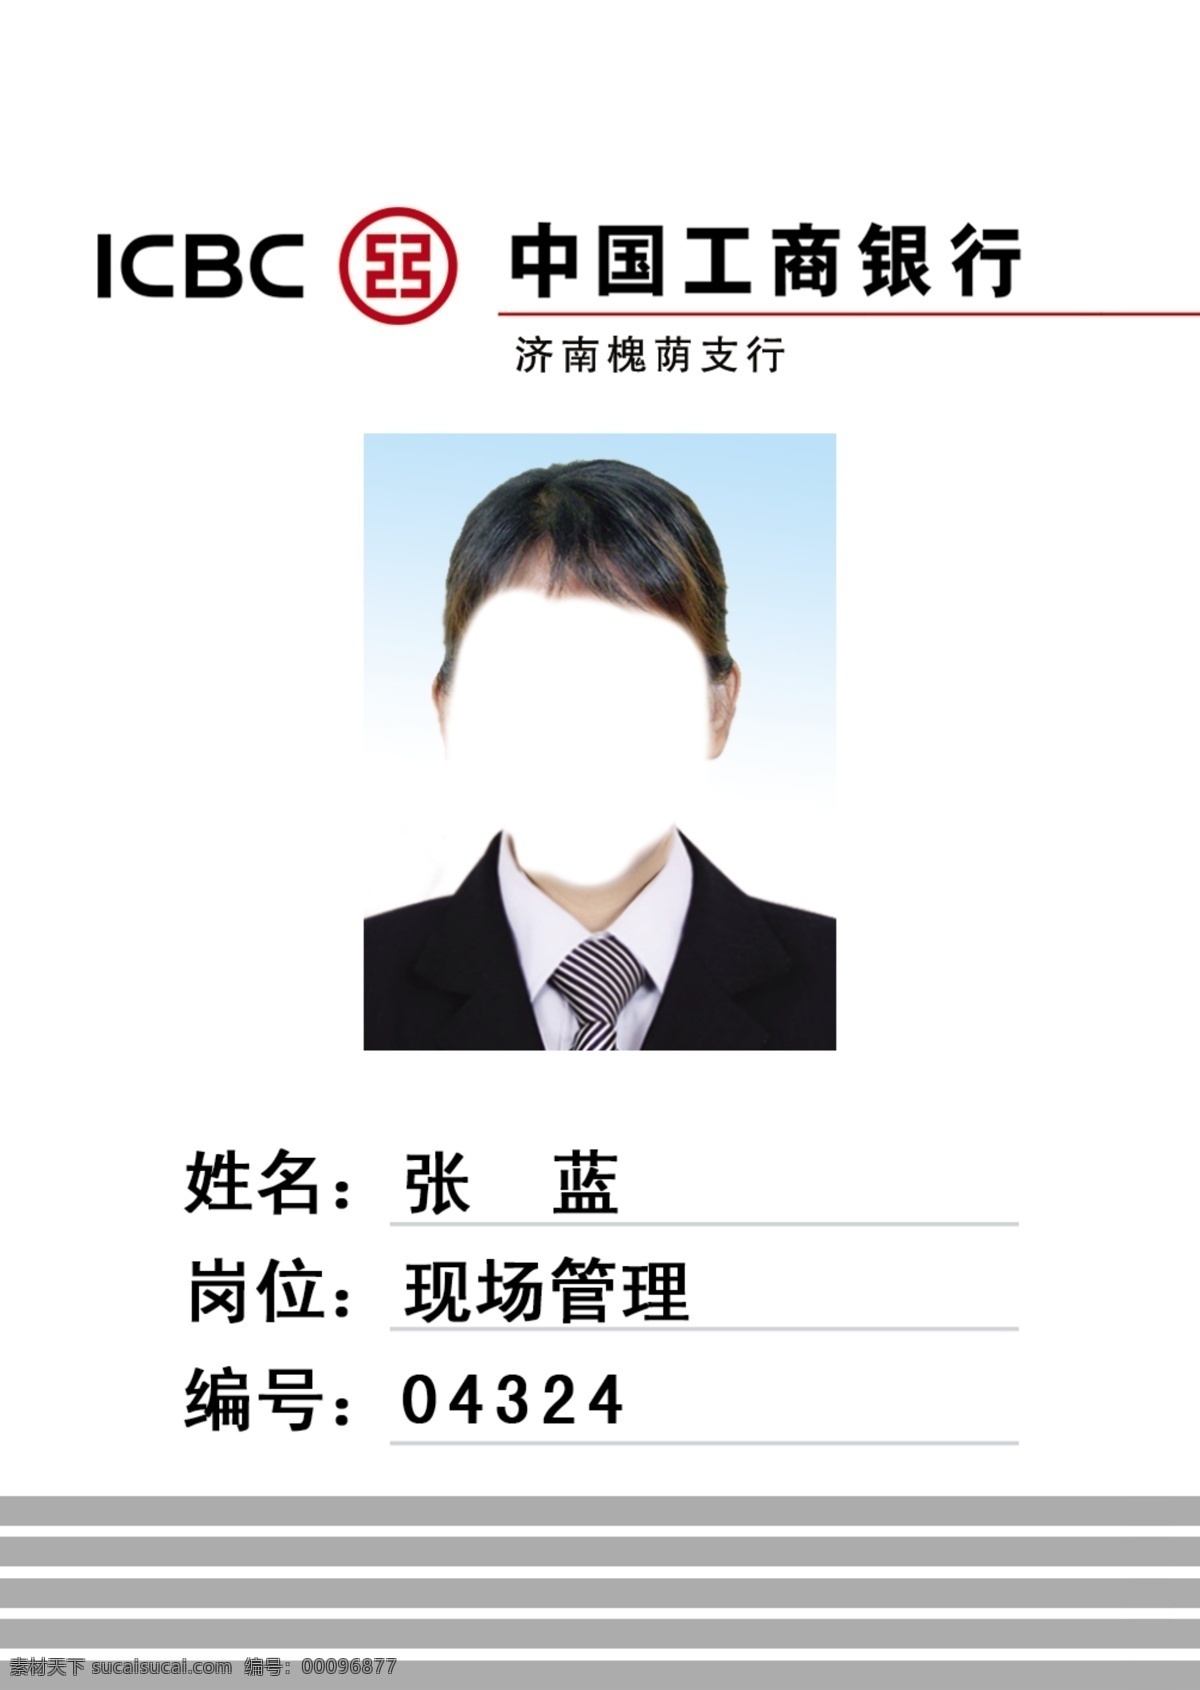 中国工商银行 胸牌模板 工商银行 工行 胸牌 胸卡 icbc 名片 名片卡片 广告设计模板 源文件